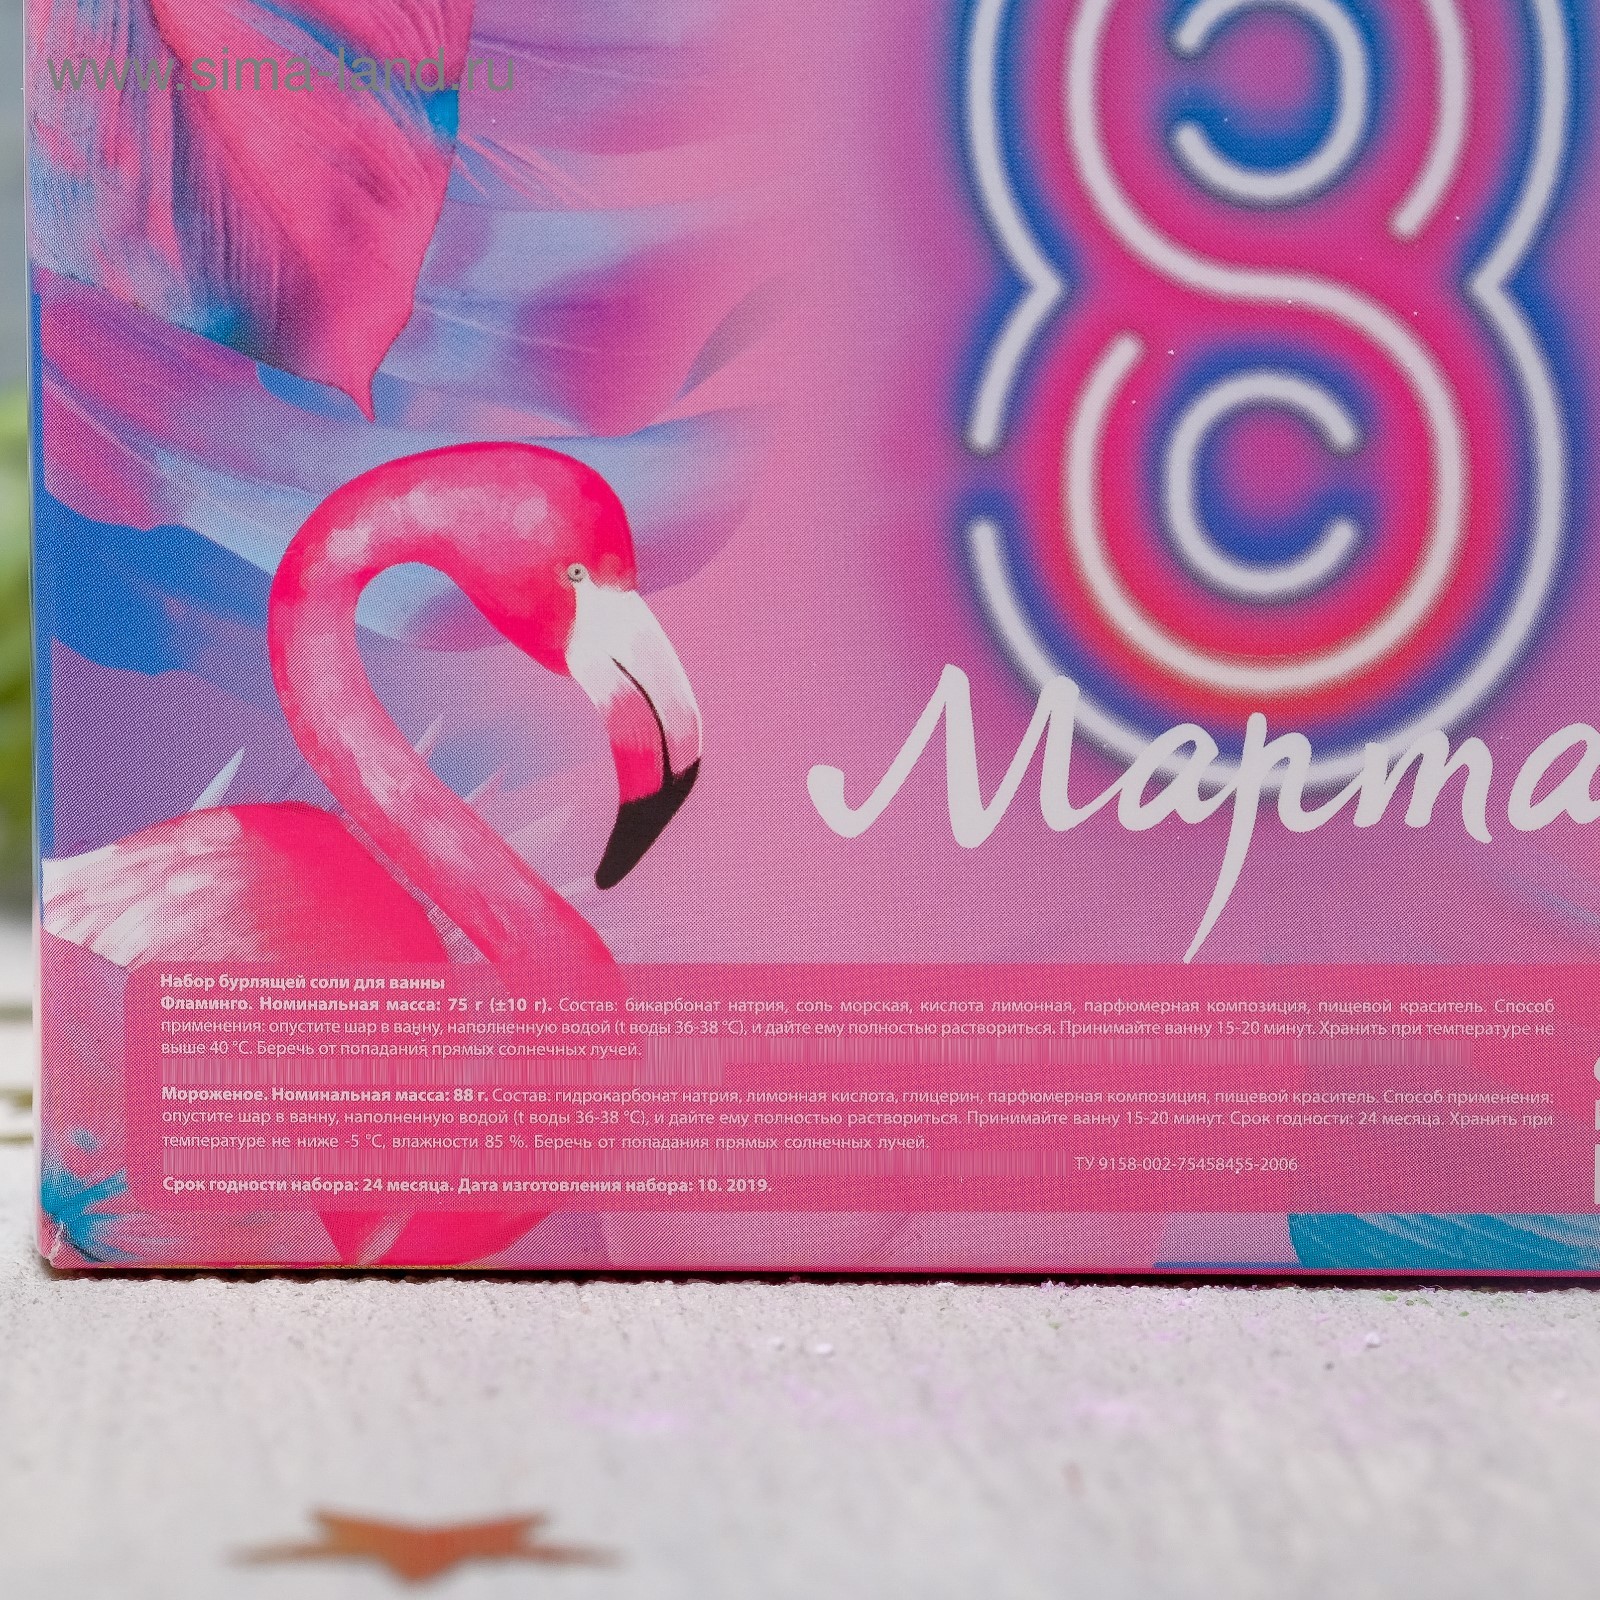 Карты фламинго. Ежедневные прокладки Фламинго. Открытка Фламинго с 8рта.